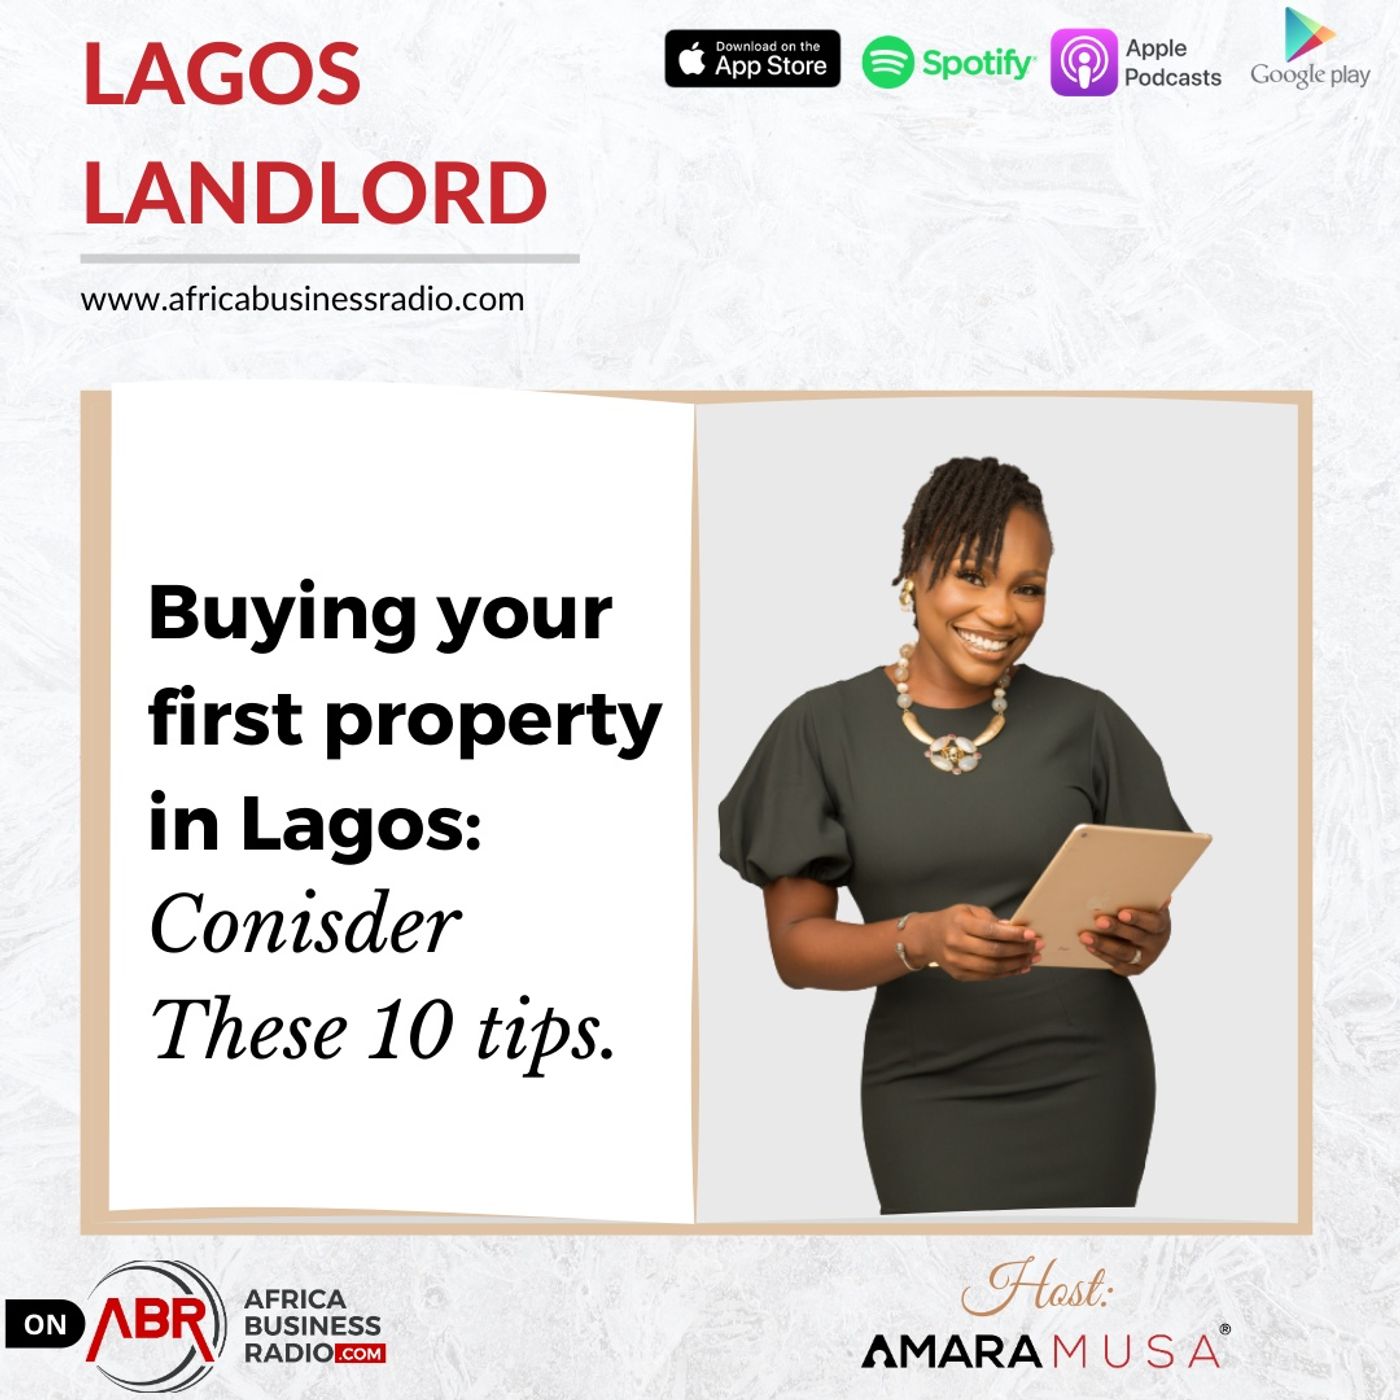 Lagos Landlord image